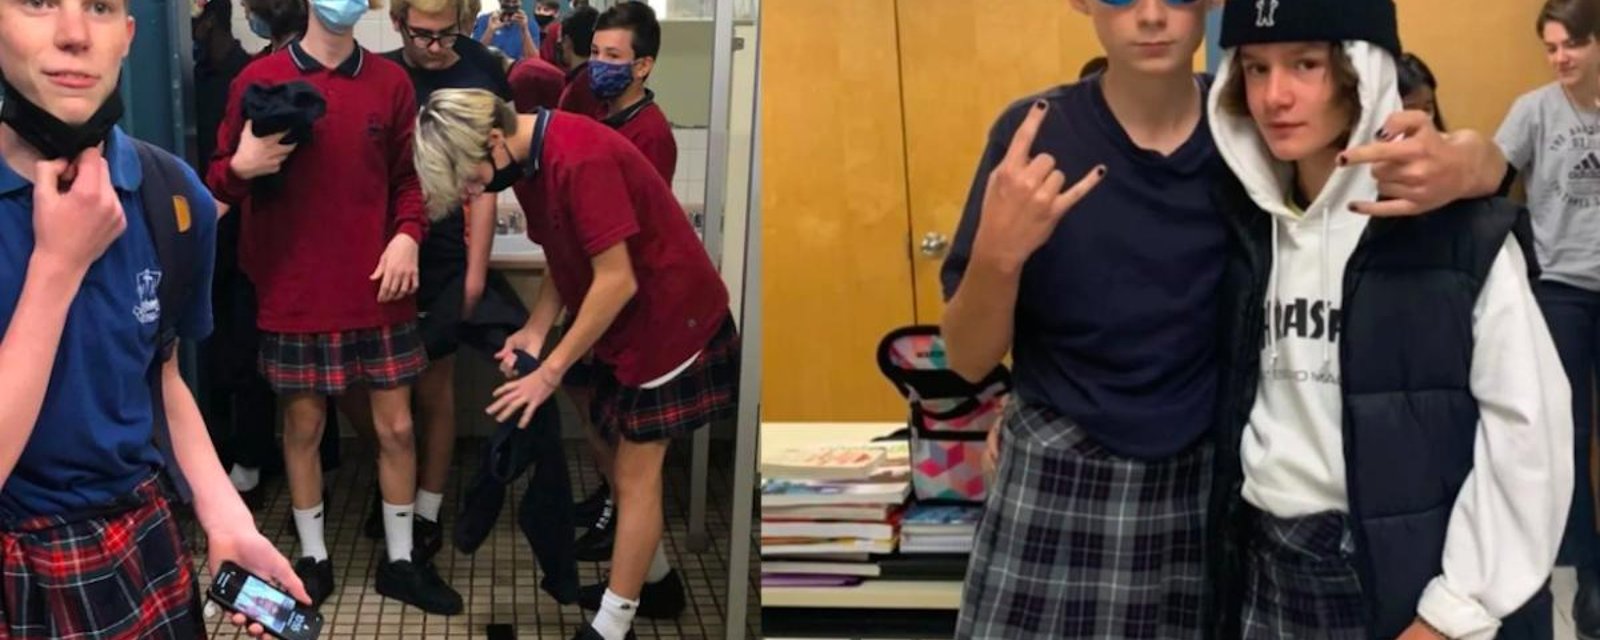 Pour diffuser un message féministe et de tolérance, des garçons portent la jupe à l’école